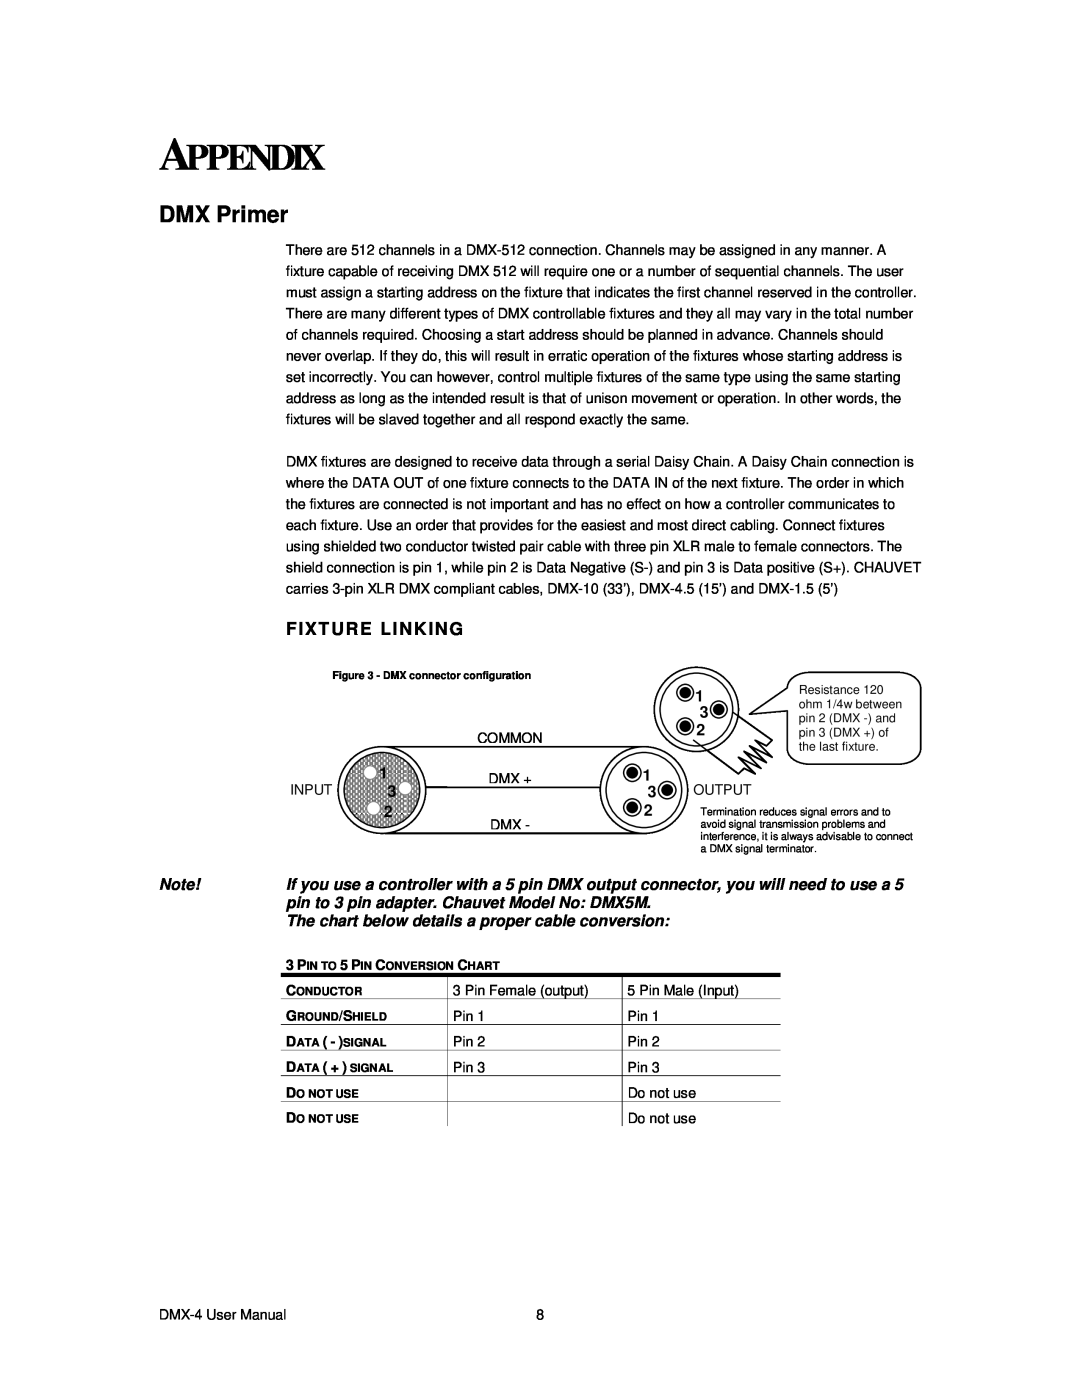 Chauvet DMX-4 user manual Appendix, DMX Primer, Fixture Linking, pin to 3 pin adapter. Chauvet Model No DMX5M 